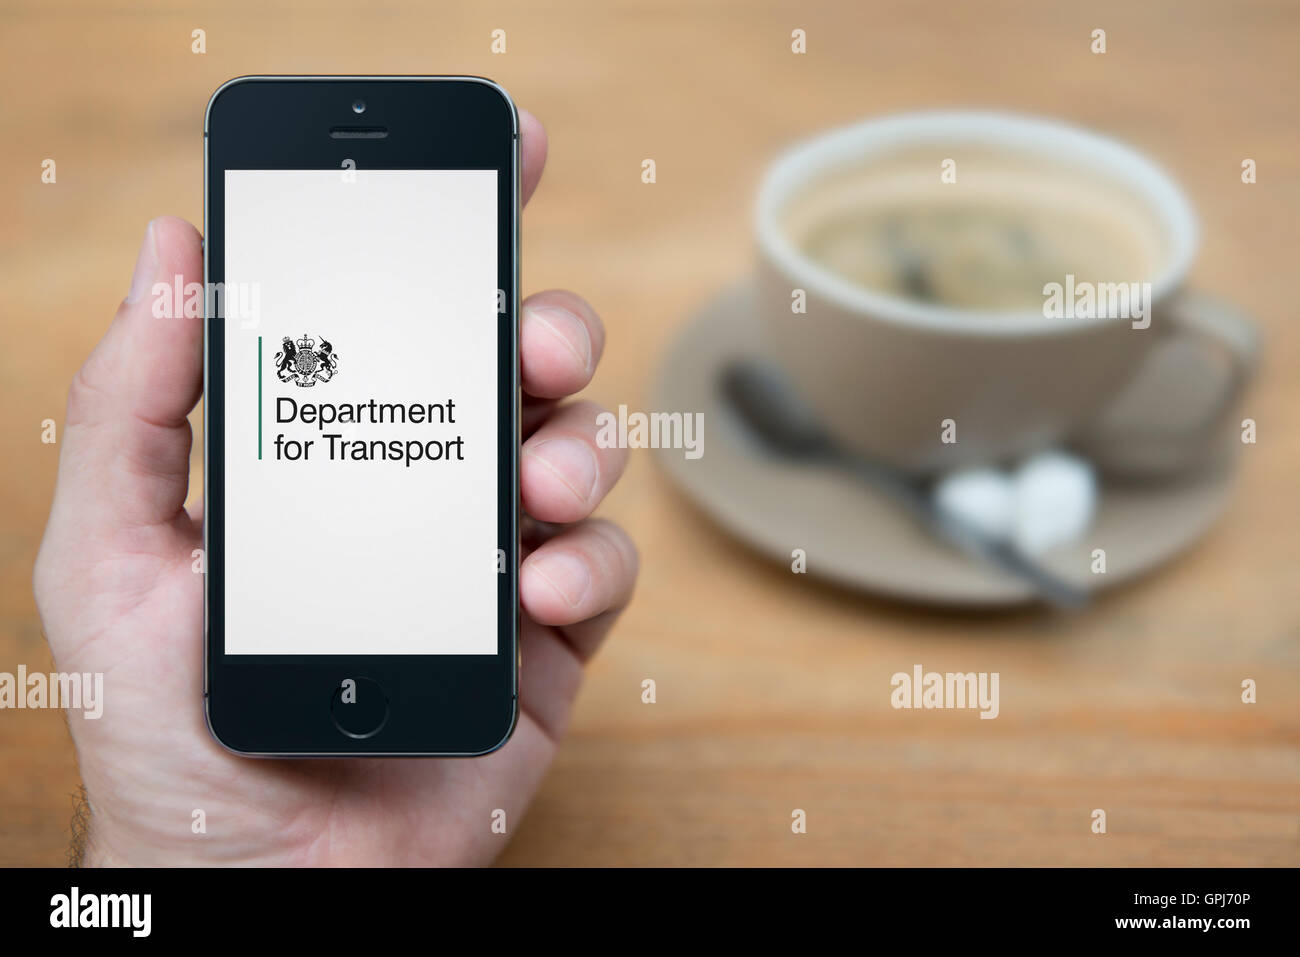 Un uomo guarda al suo iPhone che visualizza il ministero del governo del Regno Unito per il trasporto il logo, con caffè (solo uso editoriale). Foto Stock